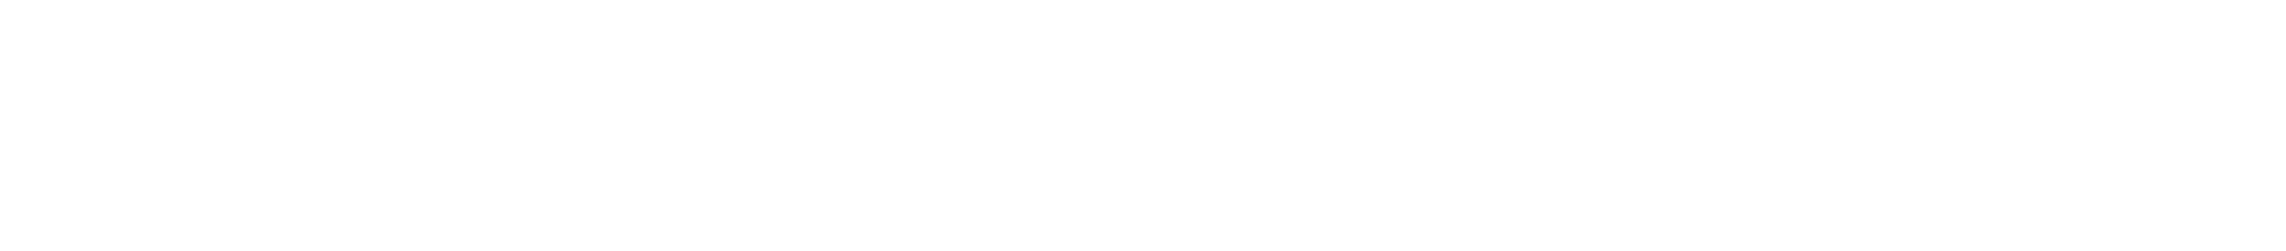 Kölner Rosenmontagszeitung 2022 Anzeigen-Sonderveröffentlichung von Kölner Stadt-Anzeiger und Kölnischer Rundschau